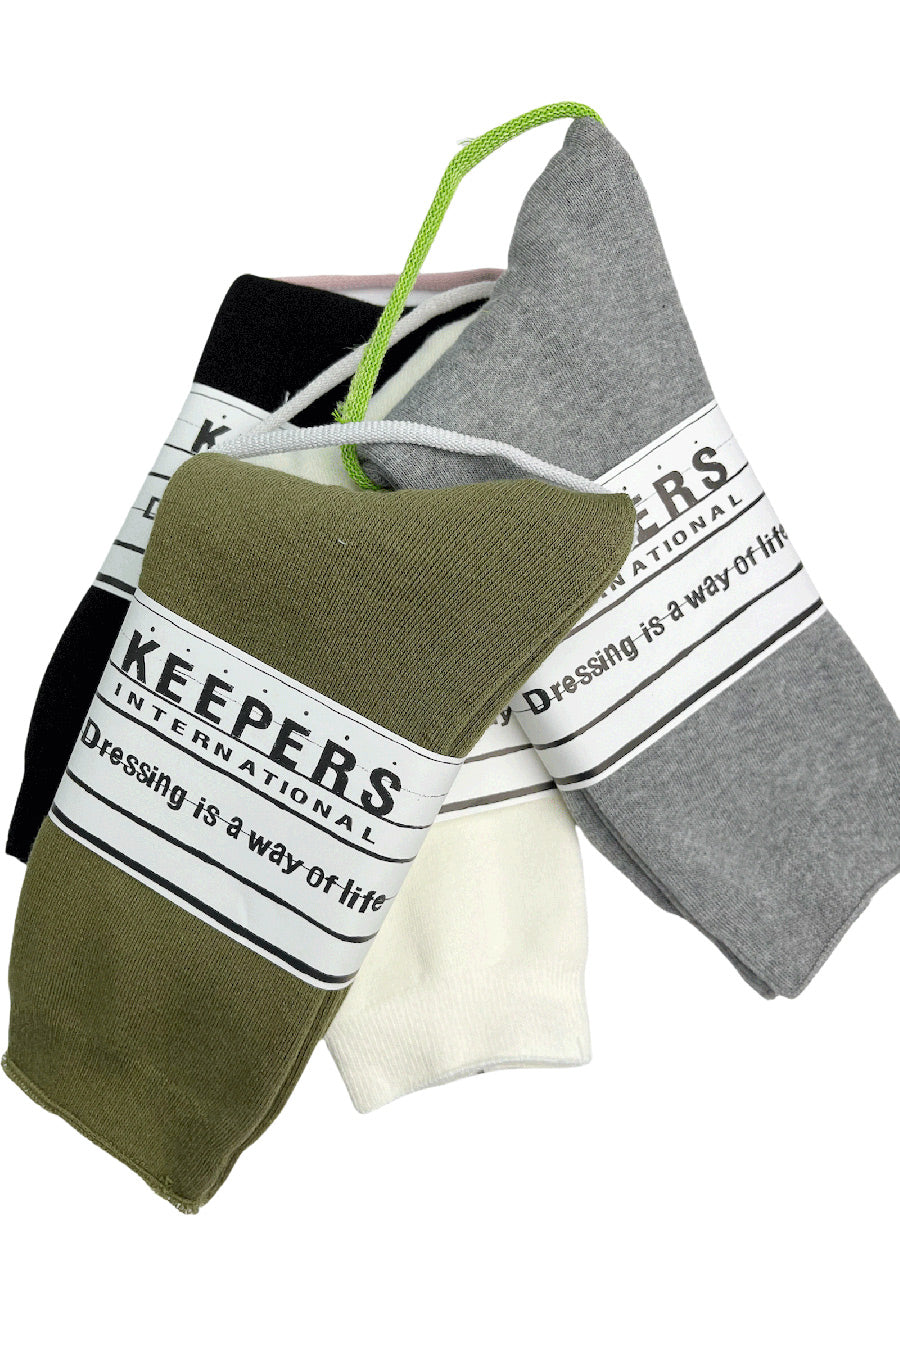 KEEPERS キーパース パイルソックス 靴下 ソックス SOCKS レギュラー丈 総パイル PILE 日本製 メンズ レディース アメカジ キャンプ アウトドア